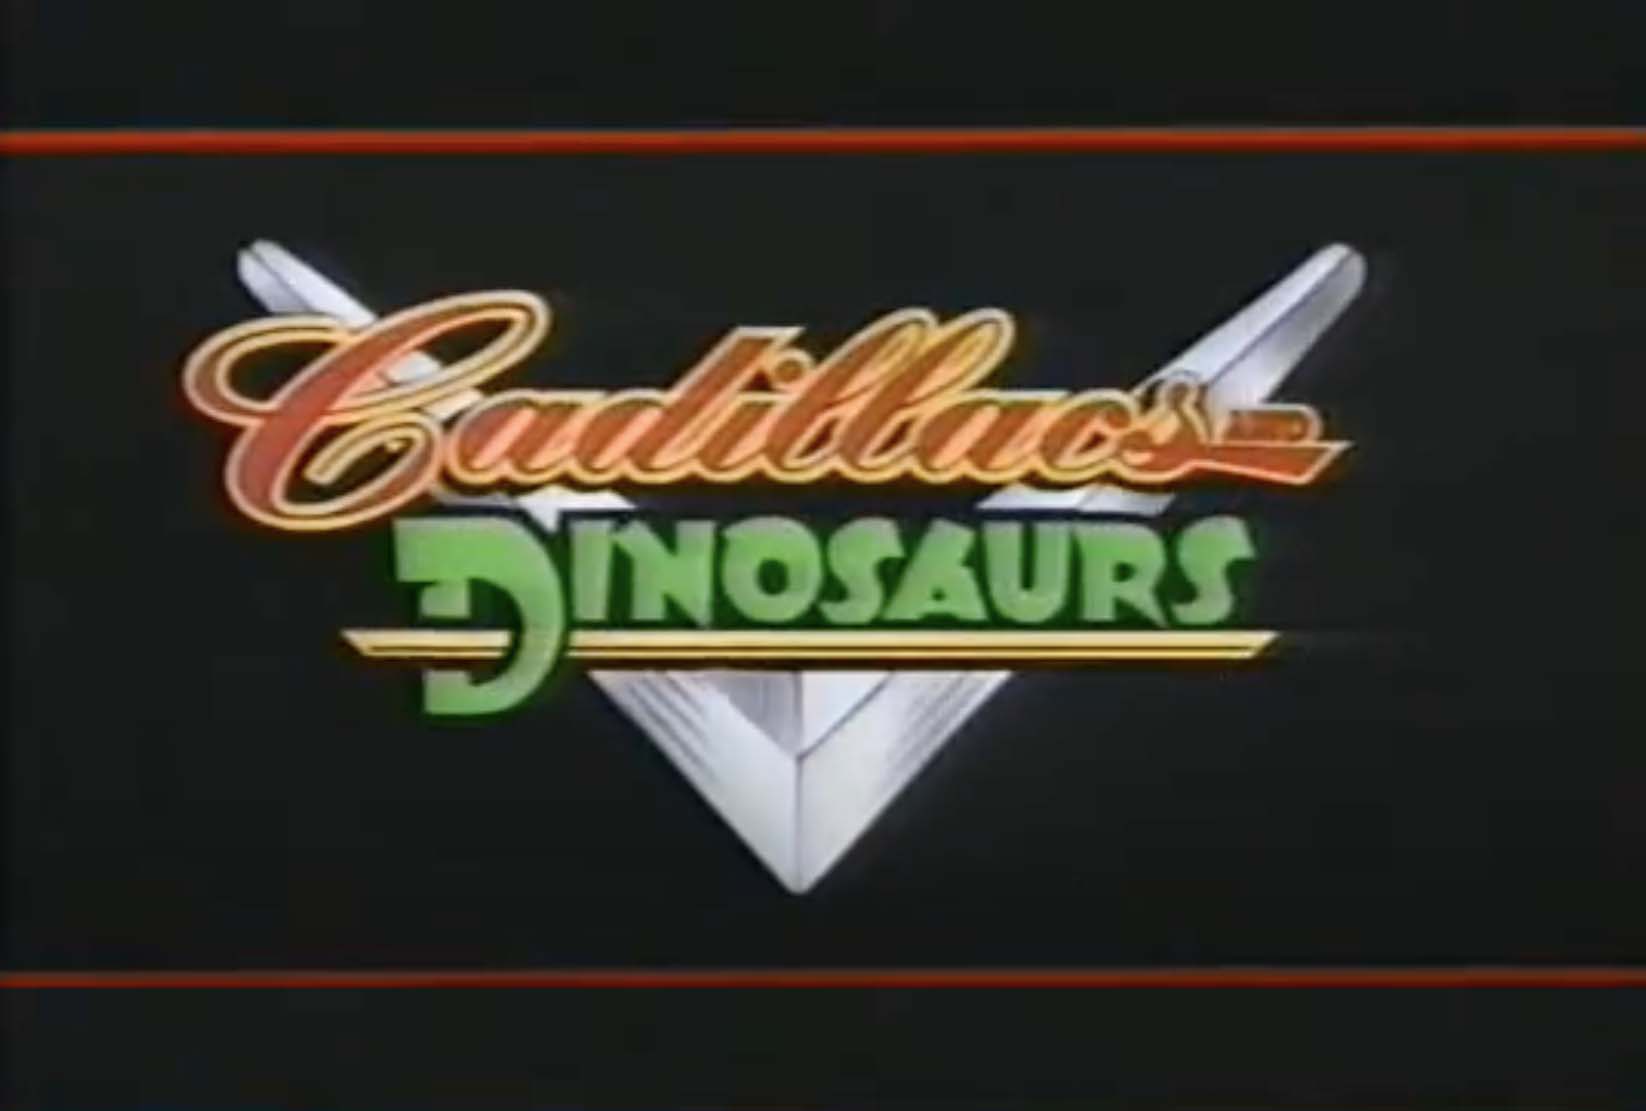 Cadillacs and Dinosaurs